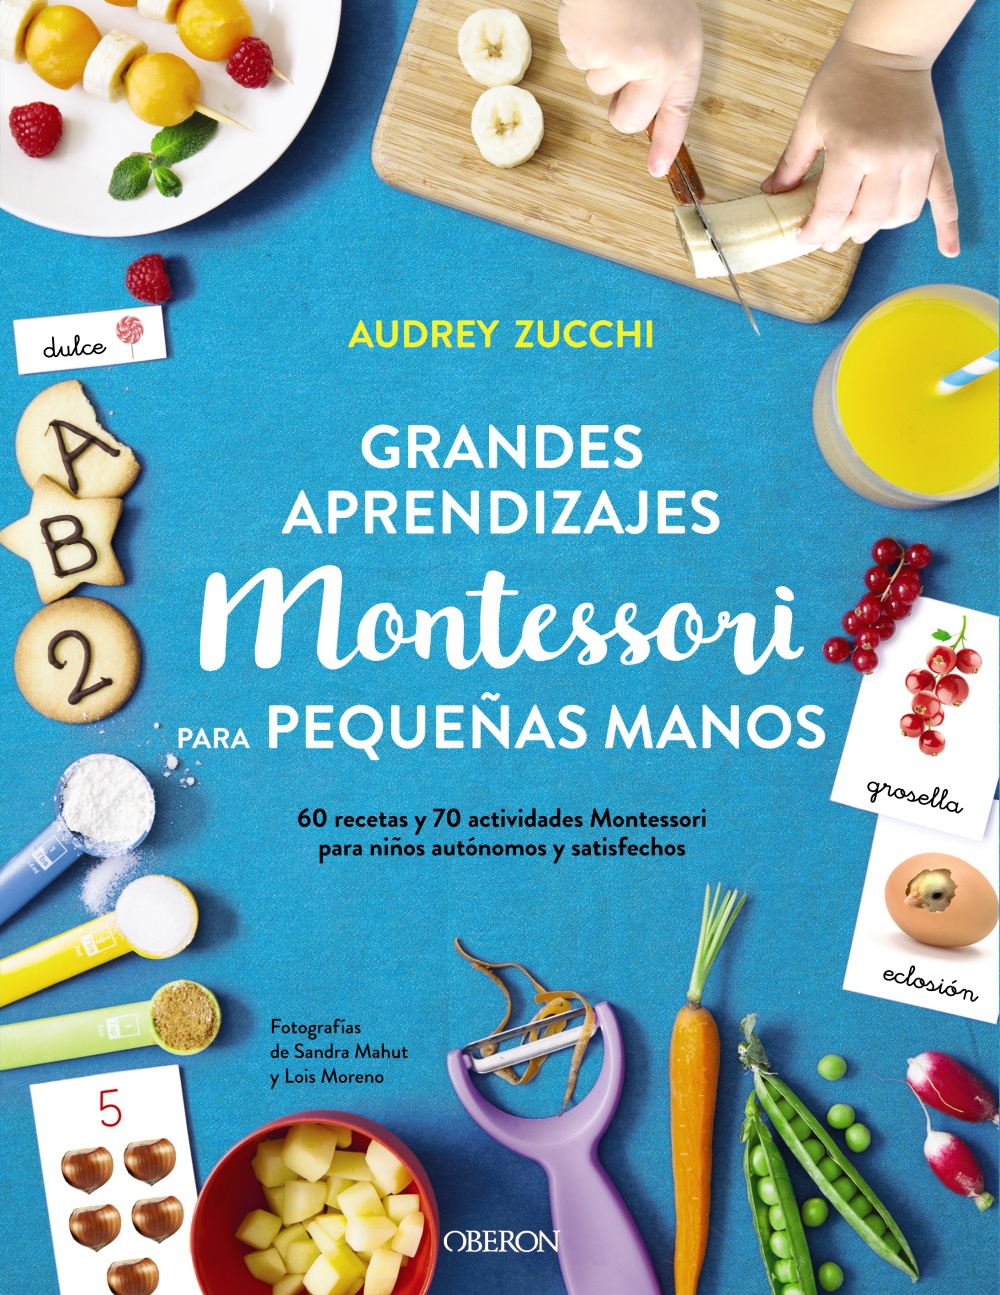 prometedor Pigmento Enriquecer Grandes aprendizajes Montessori para pequeñas manos. 60 recetas y 70 a